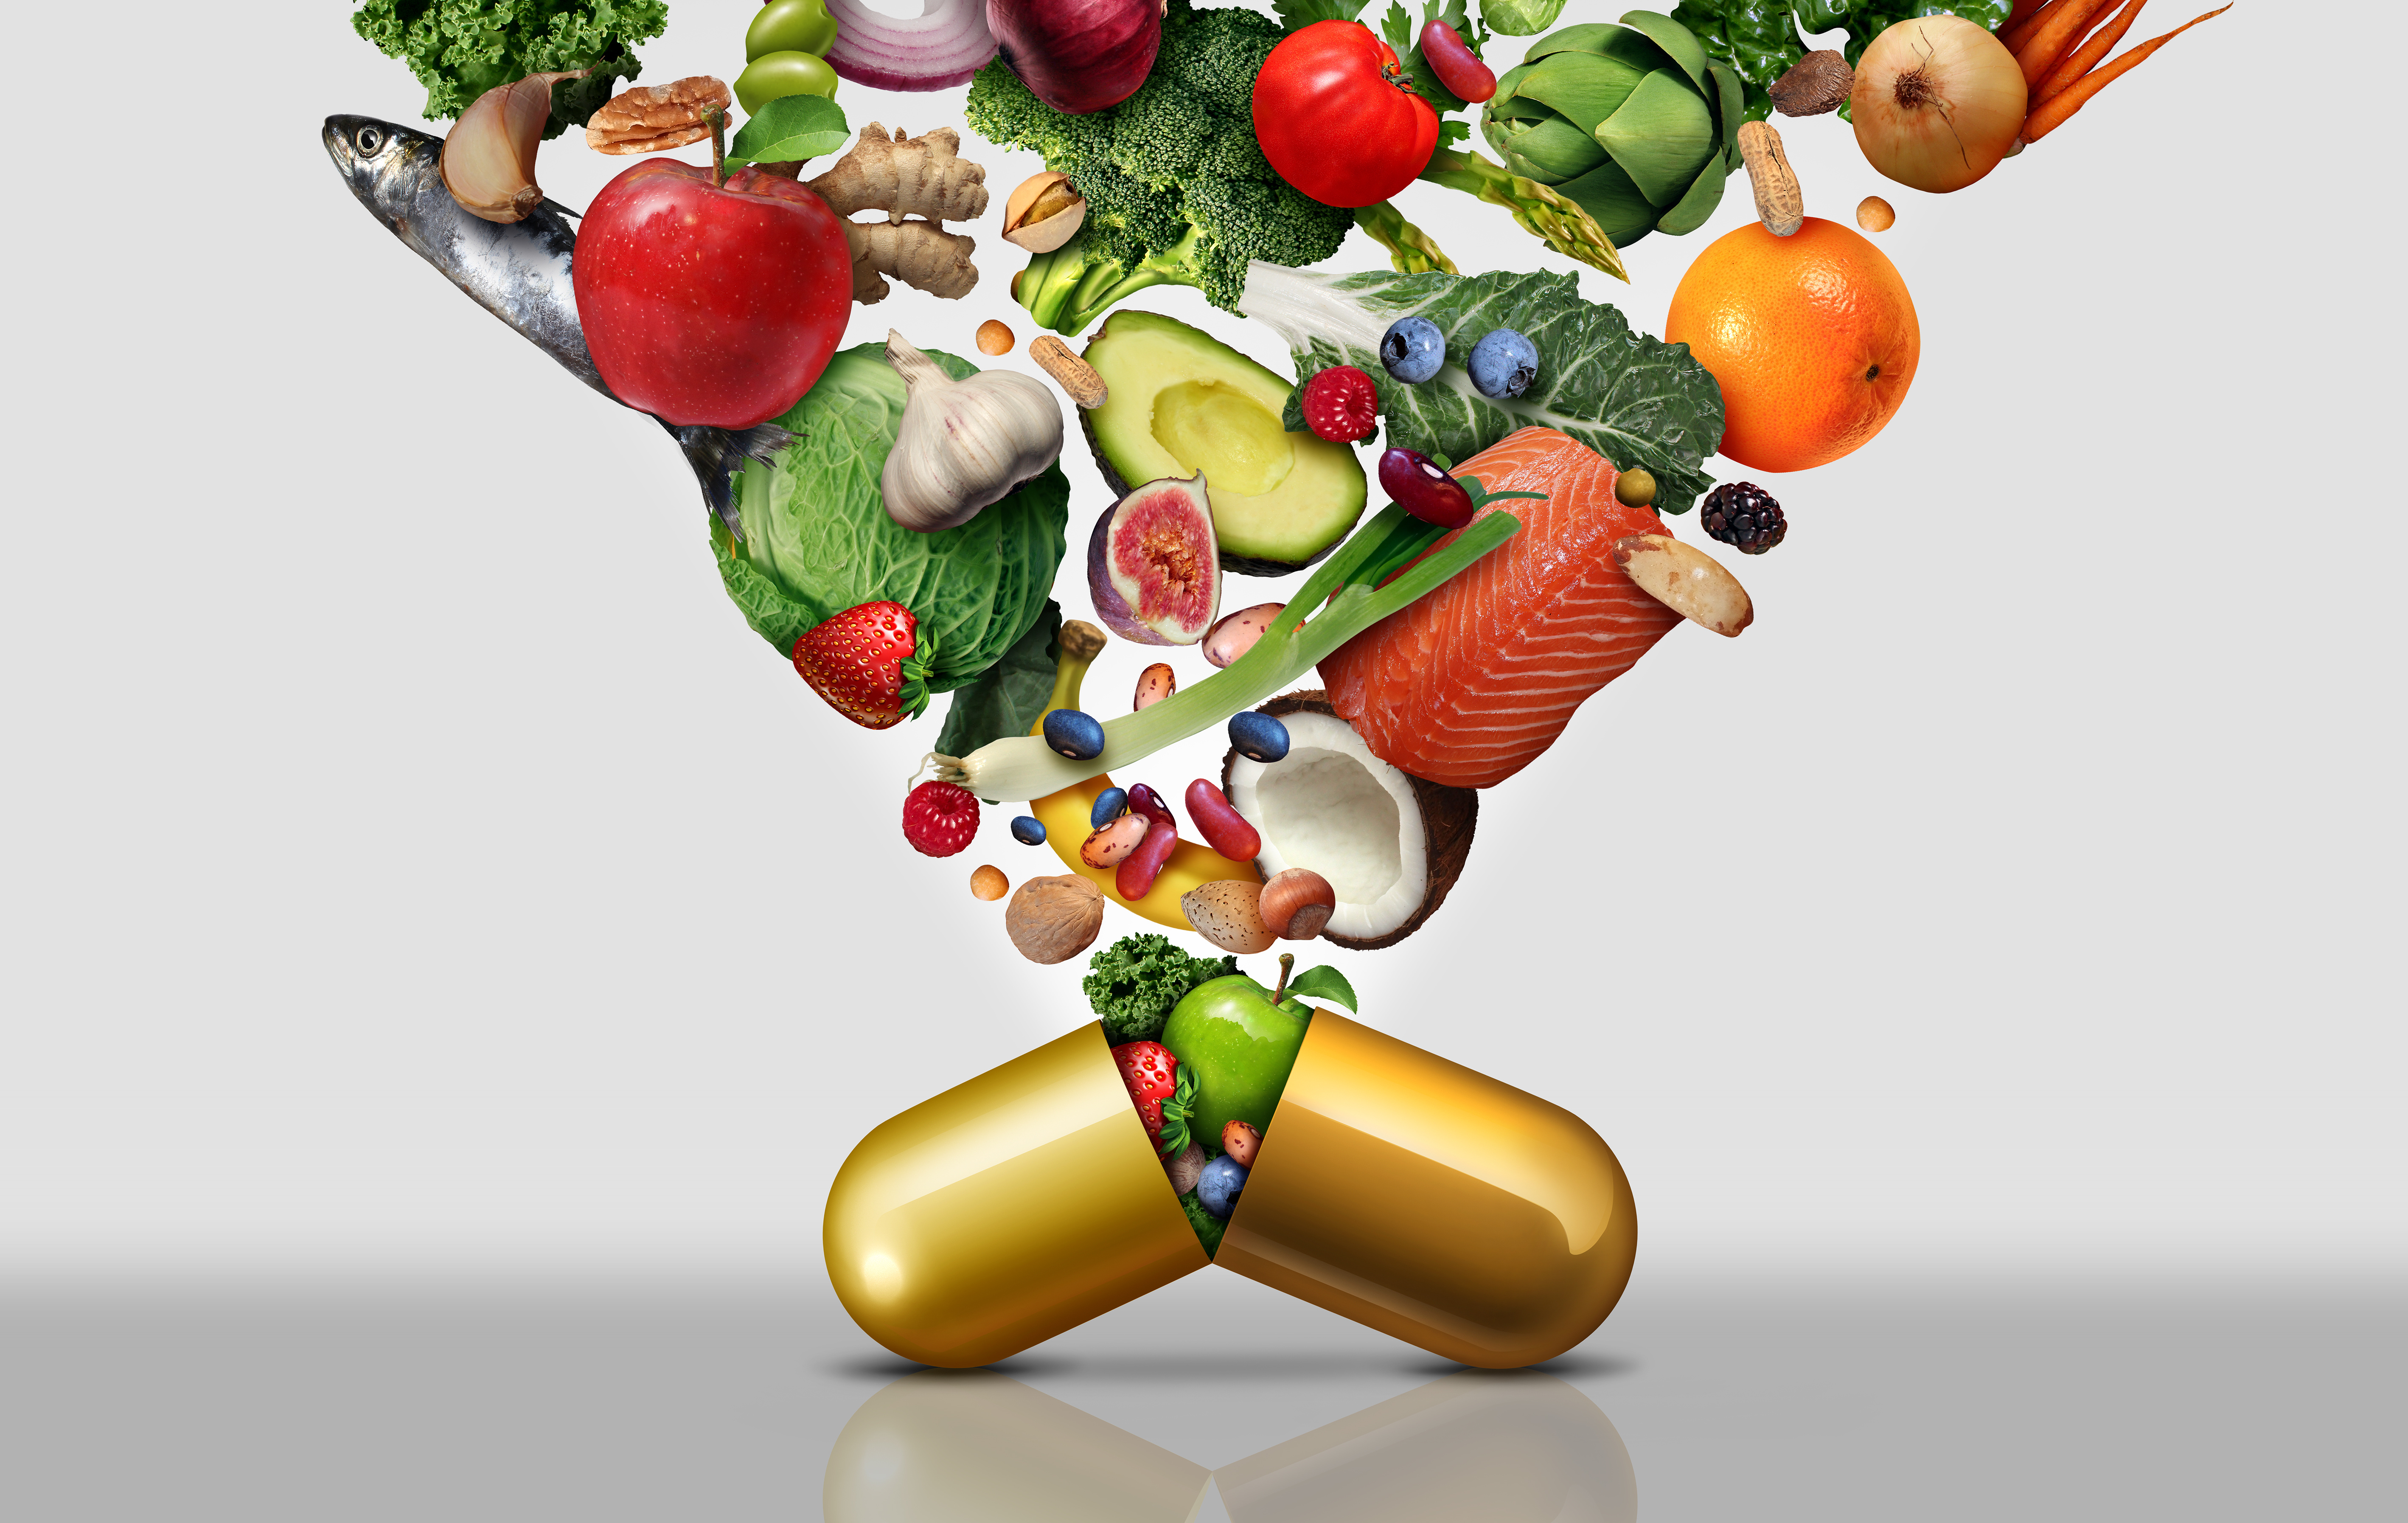 Gemüse welches aus einer Tablette herauswächst